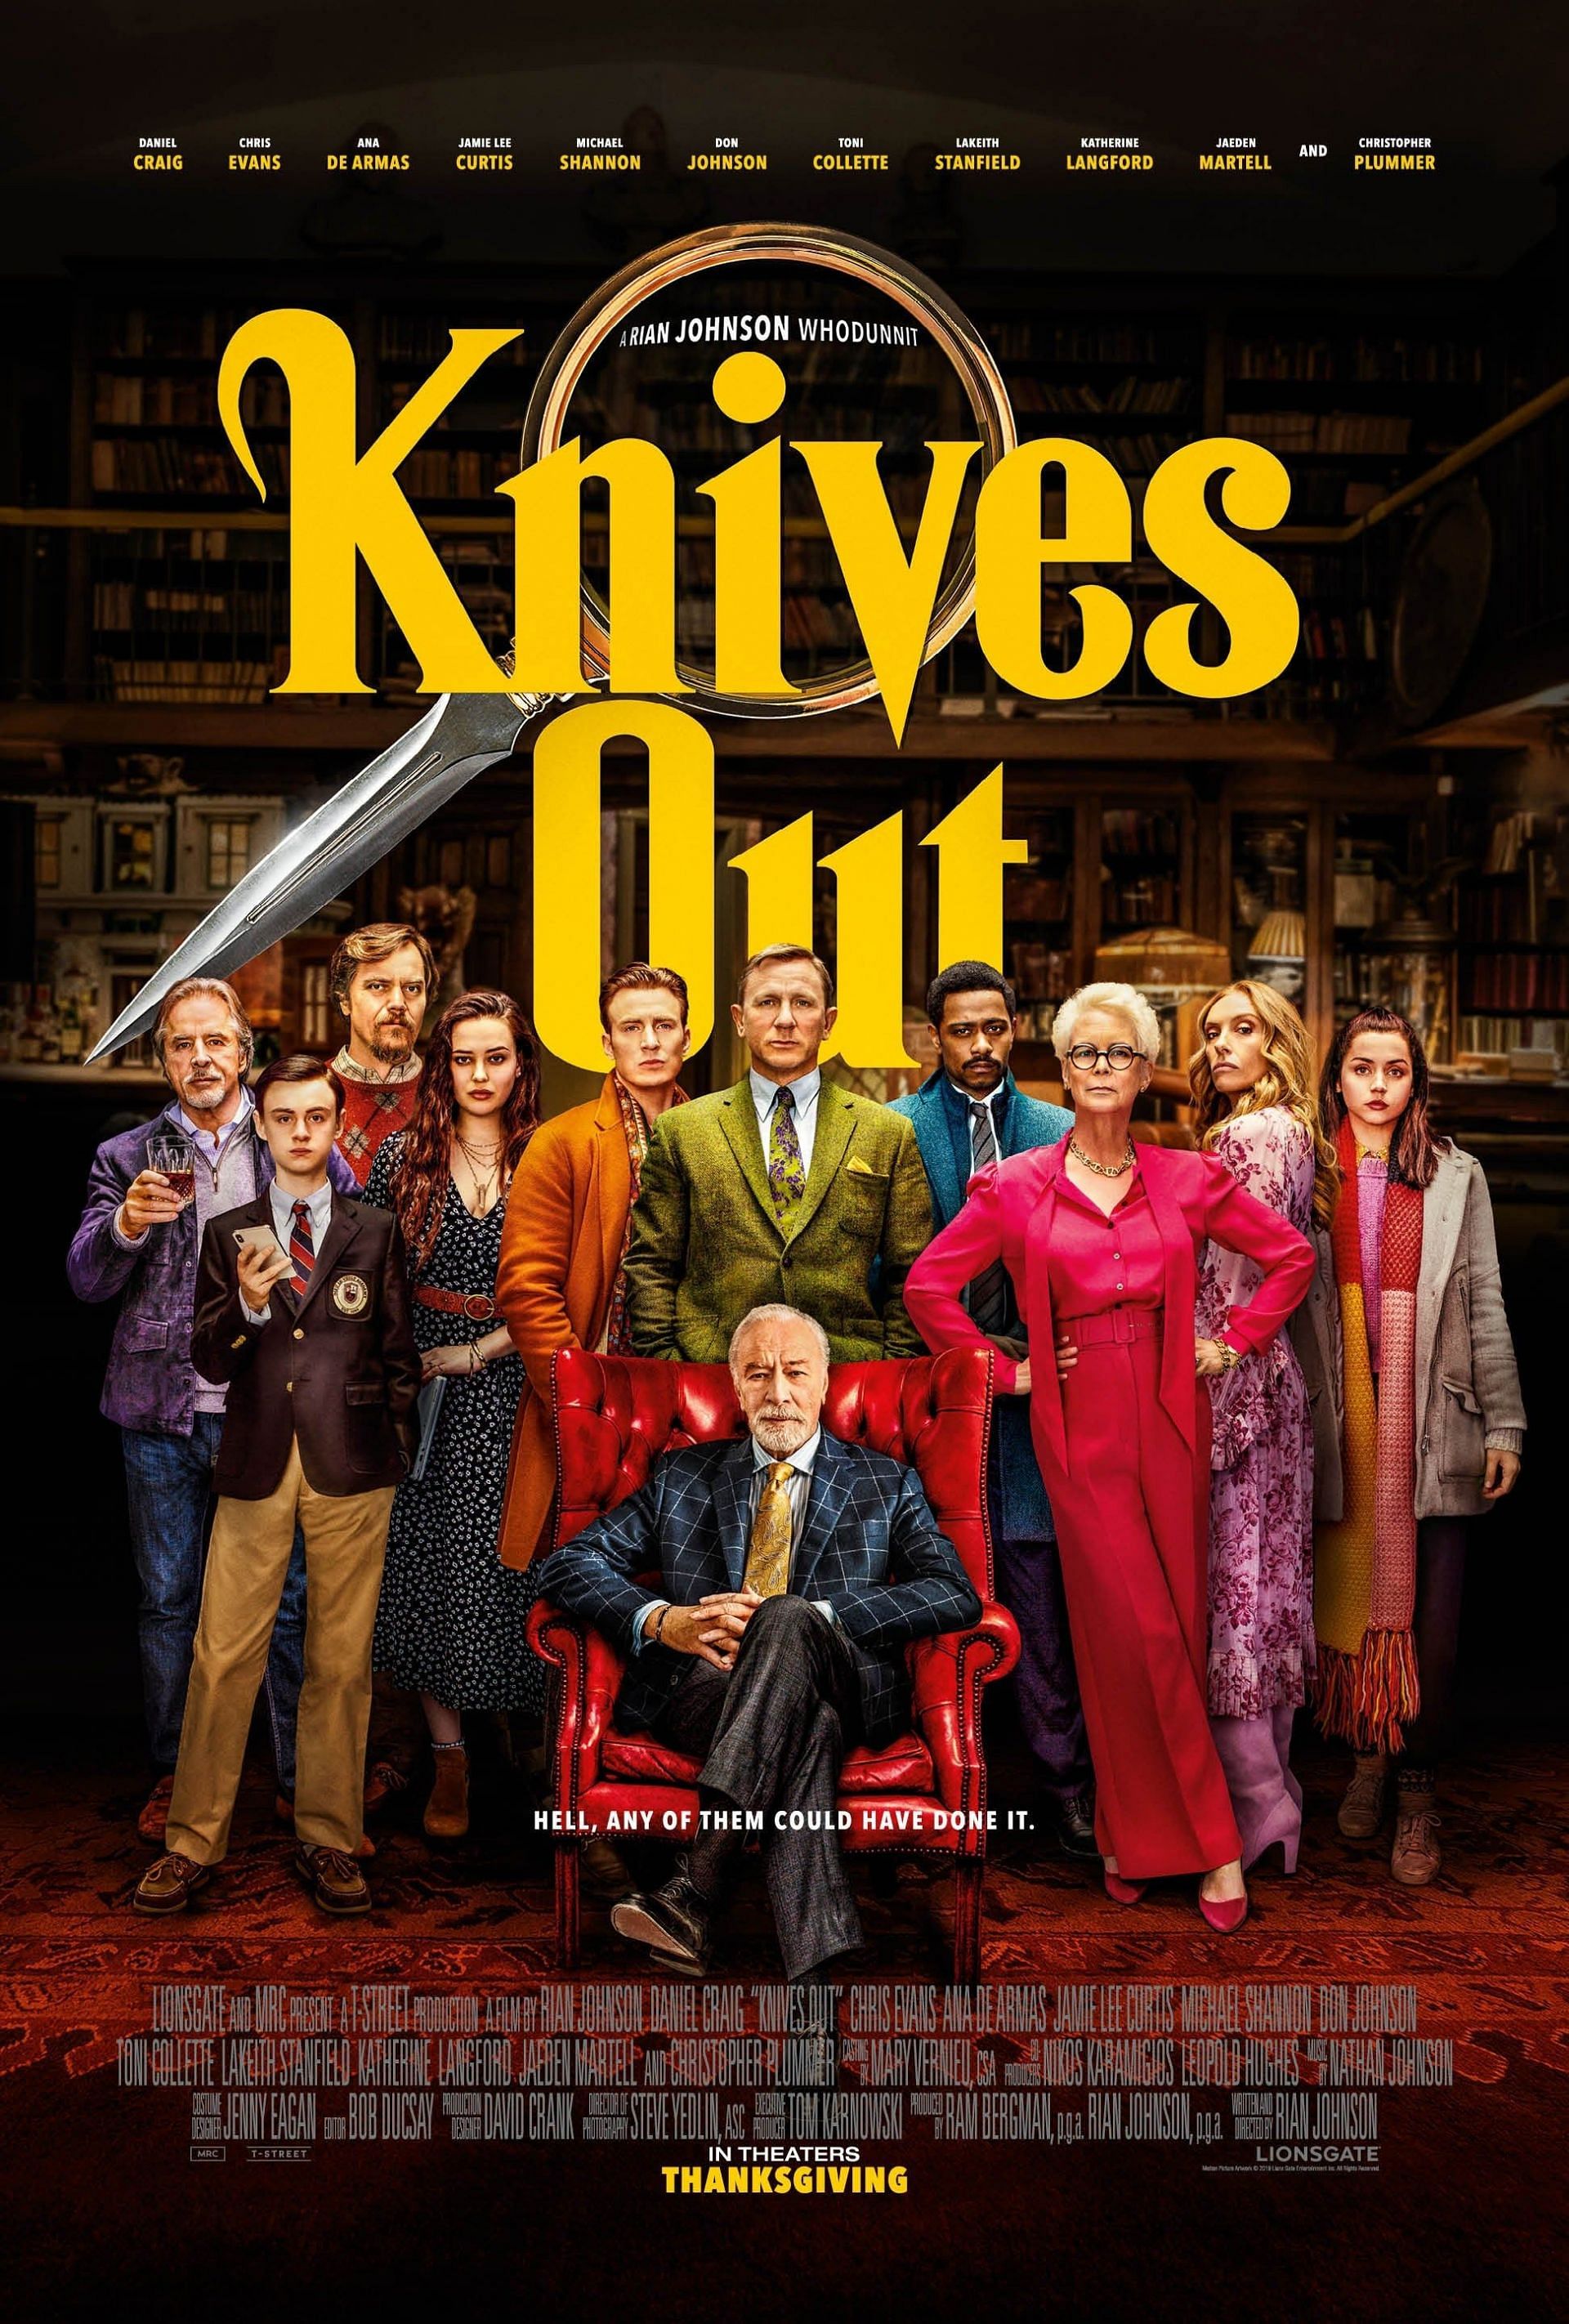 Knives Out, 2019 (Image via Lionsgate)